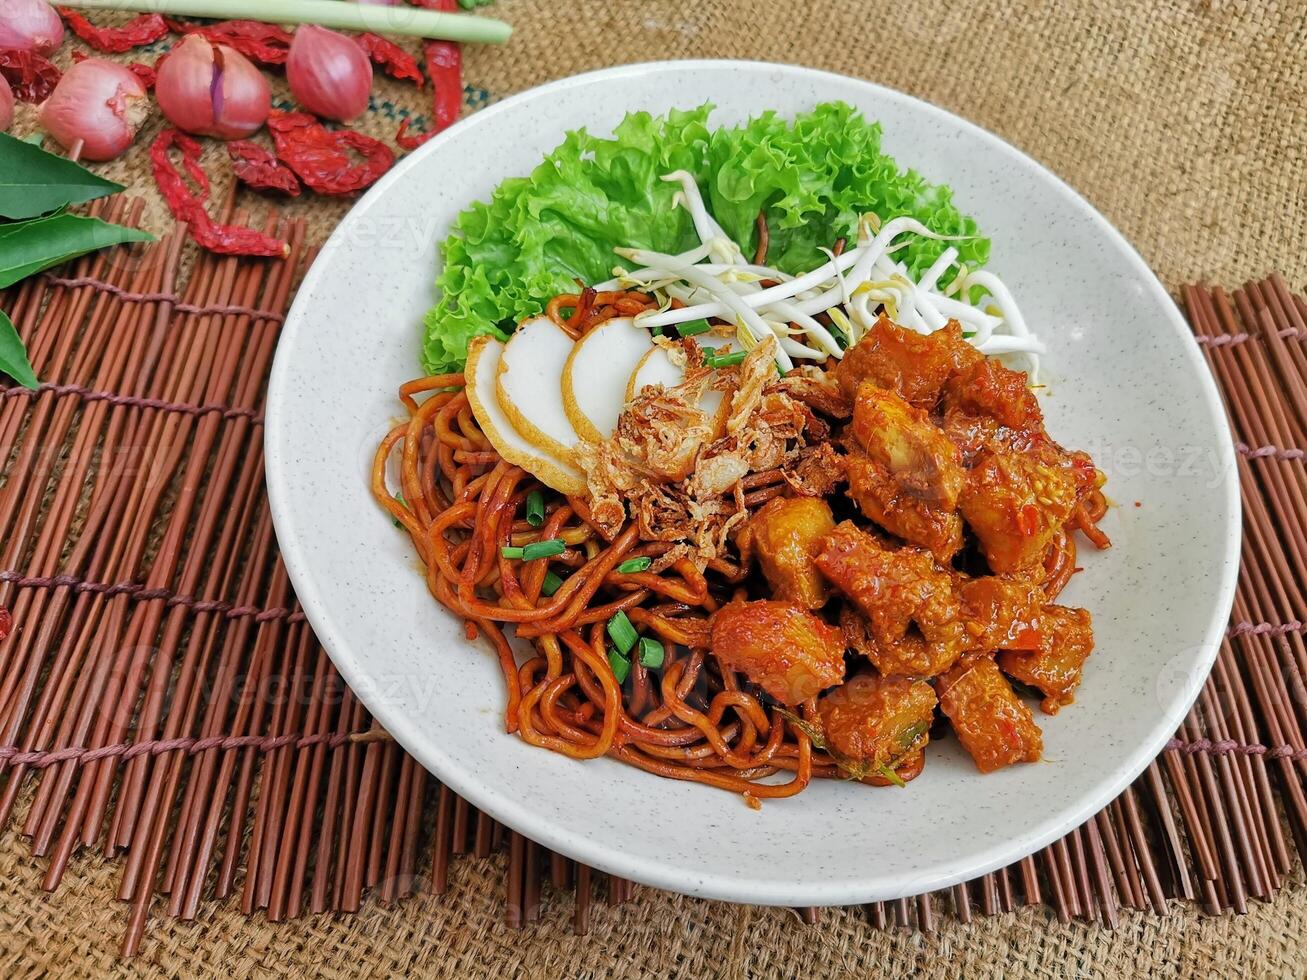 Hähnchen Curry trocken Nudel serviert Gericht isoliert auf Tabelle oben Aussicht von thailändisch Essen foto